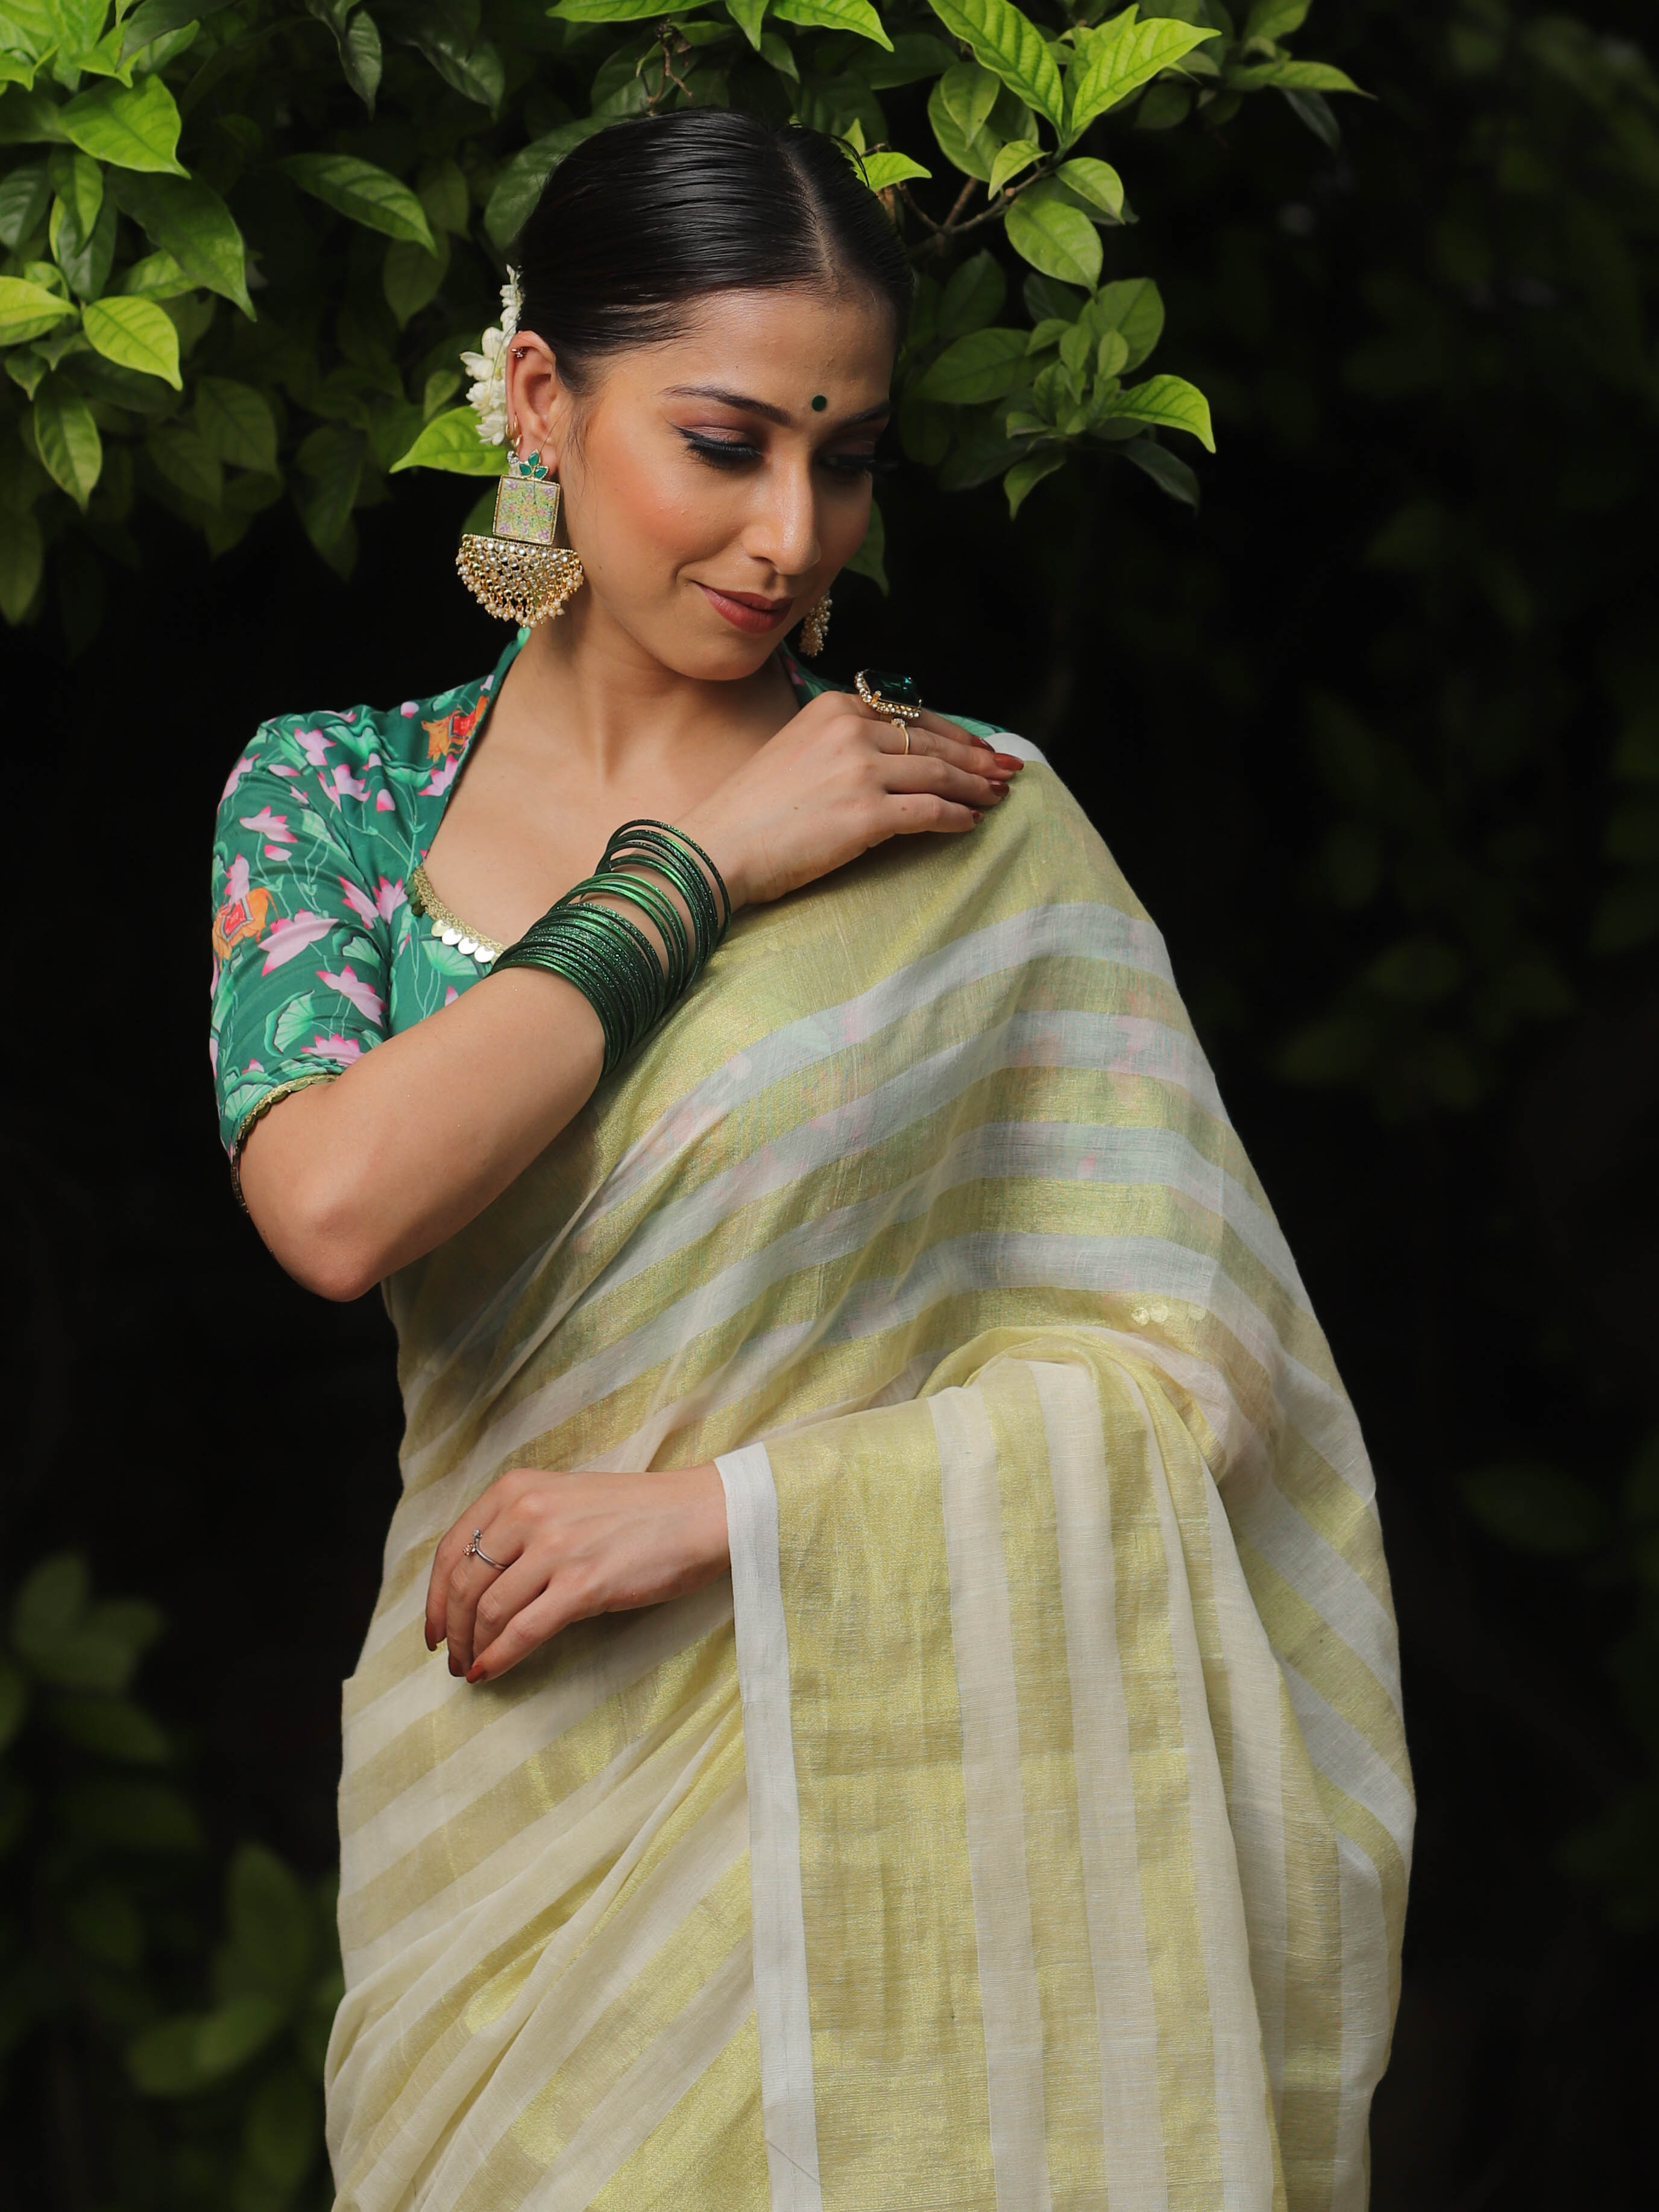 Banarasee Pure Mul Cotton Zari Stripes Saree With Green Pichwai Blouse-White & Gold